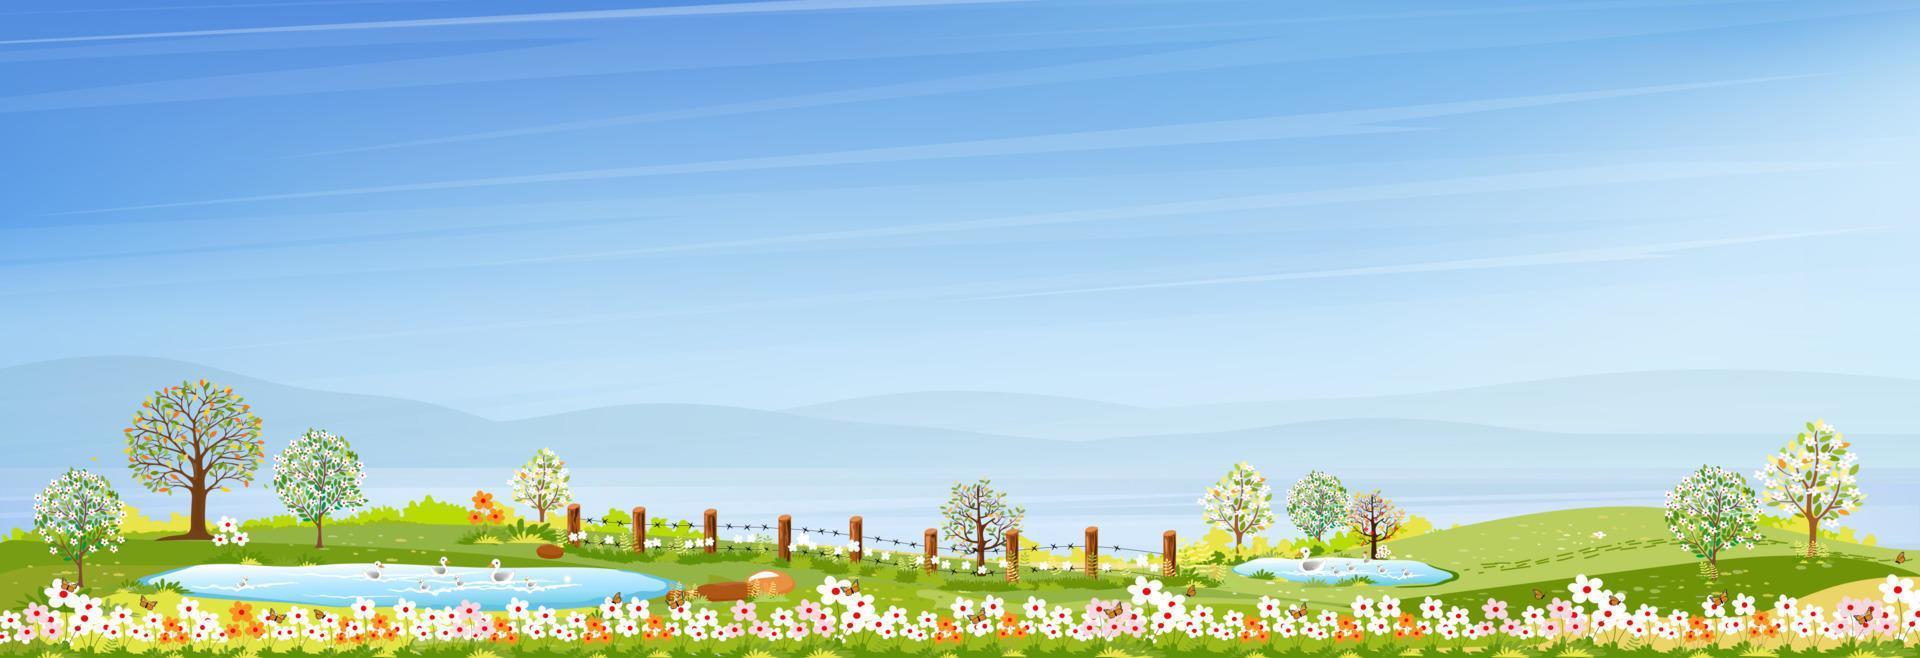 Frühling mit blauem Himmel und grüner Wiese auf Hügeln, Vektor-Cartoon-Frühling oder Sommerdorf am See, Panorama-Landschaft von Ackerland mit Familienenten, die auf dem Teich schwimmen. vektor